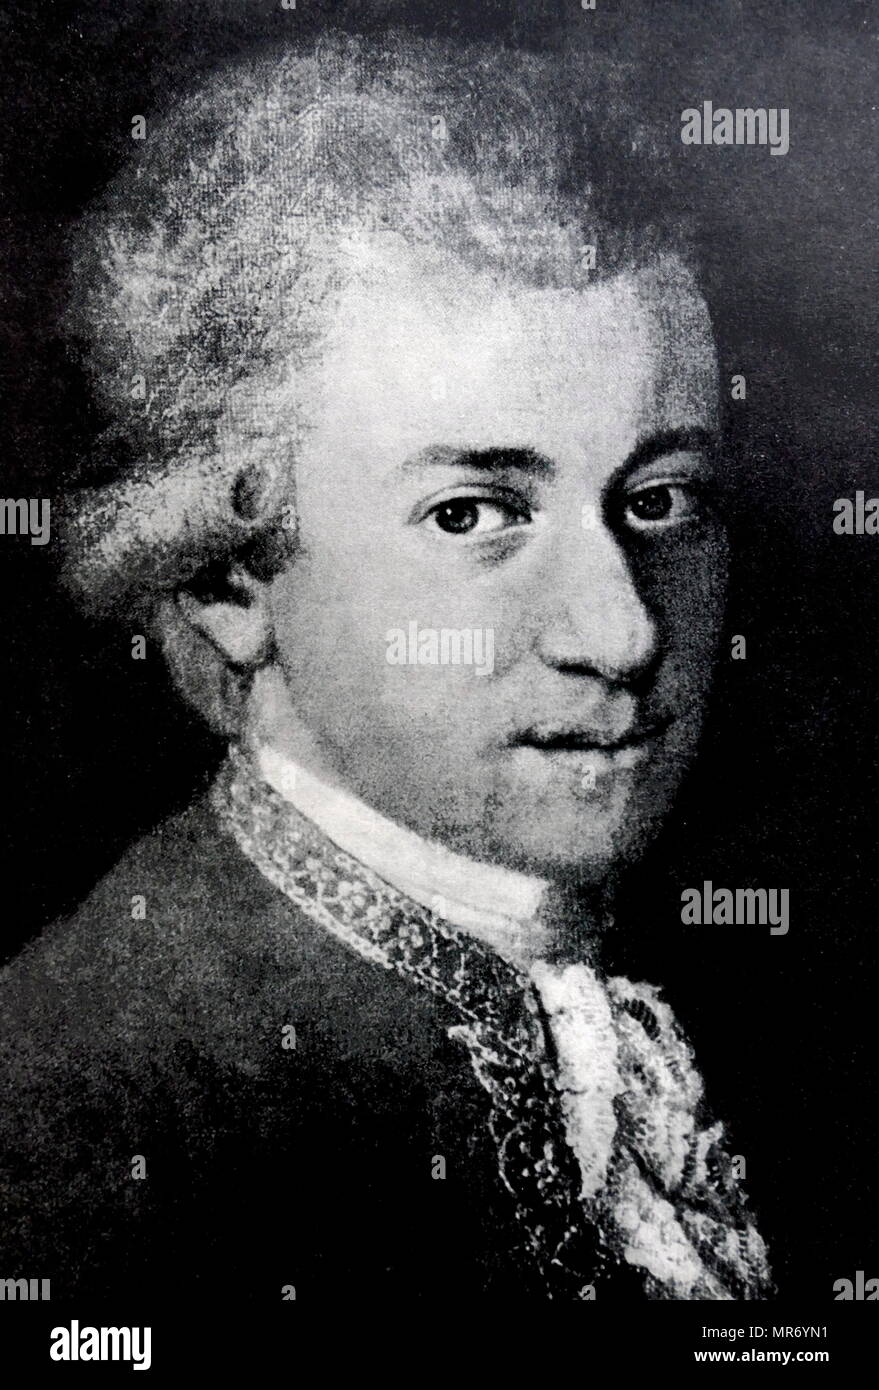 Portrait de Wolfgang Mozart par Jean Nepomucene della Croce, 1780. Wolfgang Amadeus Mozart (1756 - 1791), était un compositeur prolifique et influent de l'époque classique. Banque D'Images